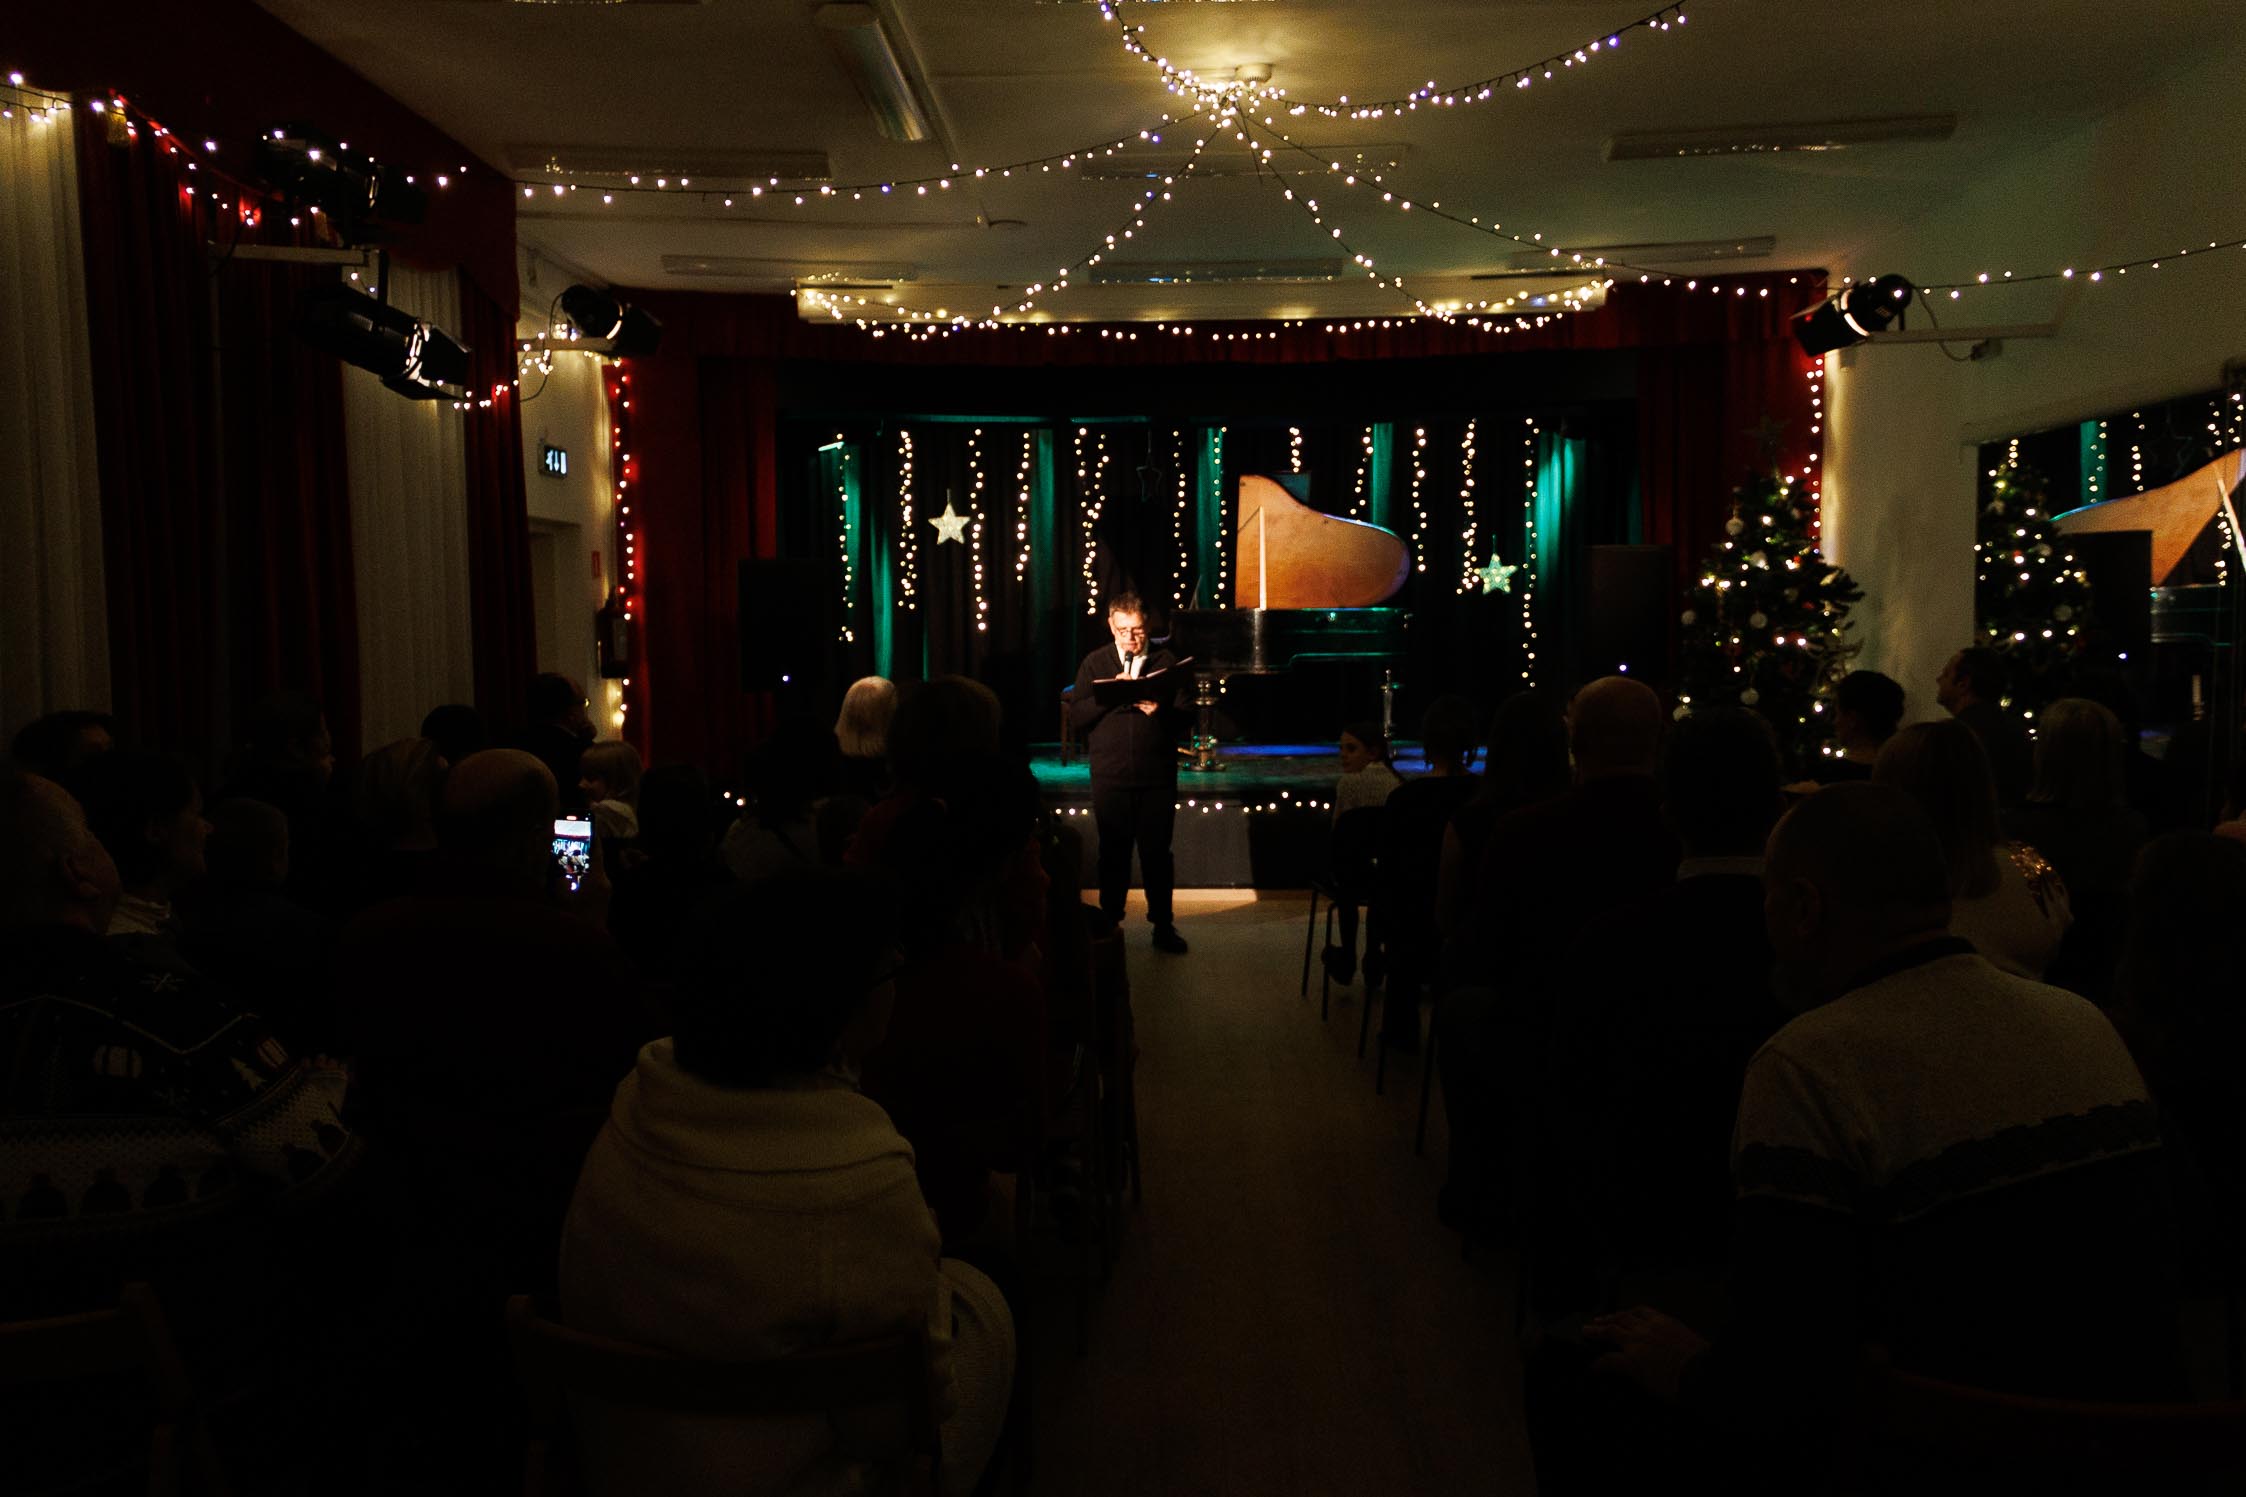 widok na całą salę widowiskową, przyozdobioną świątecznie, w centrum mężczyzna który zapowiada następny utwór